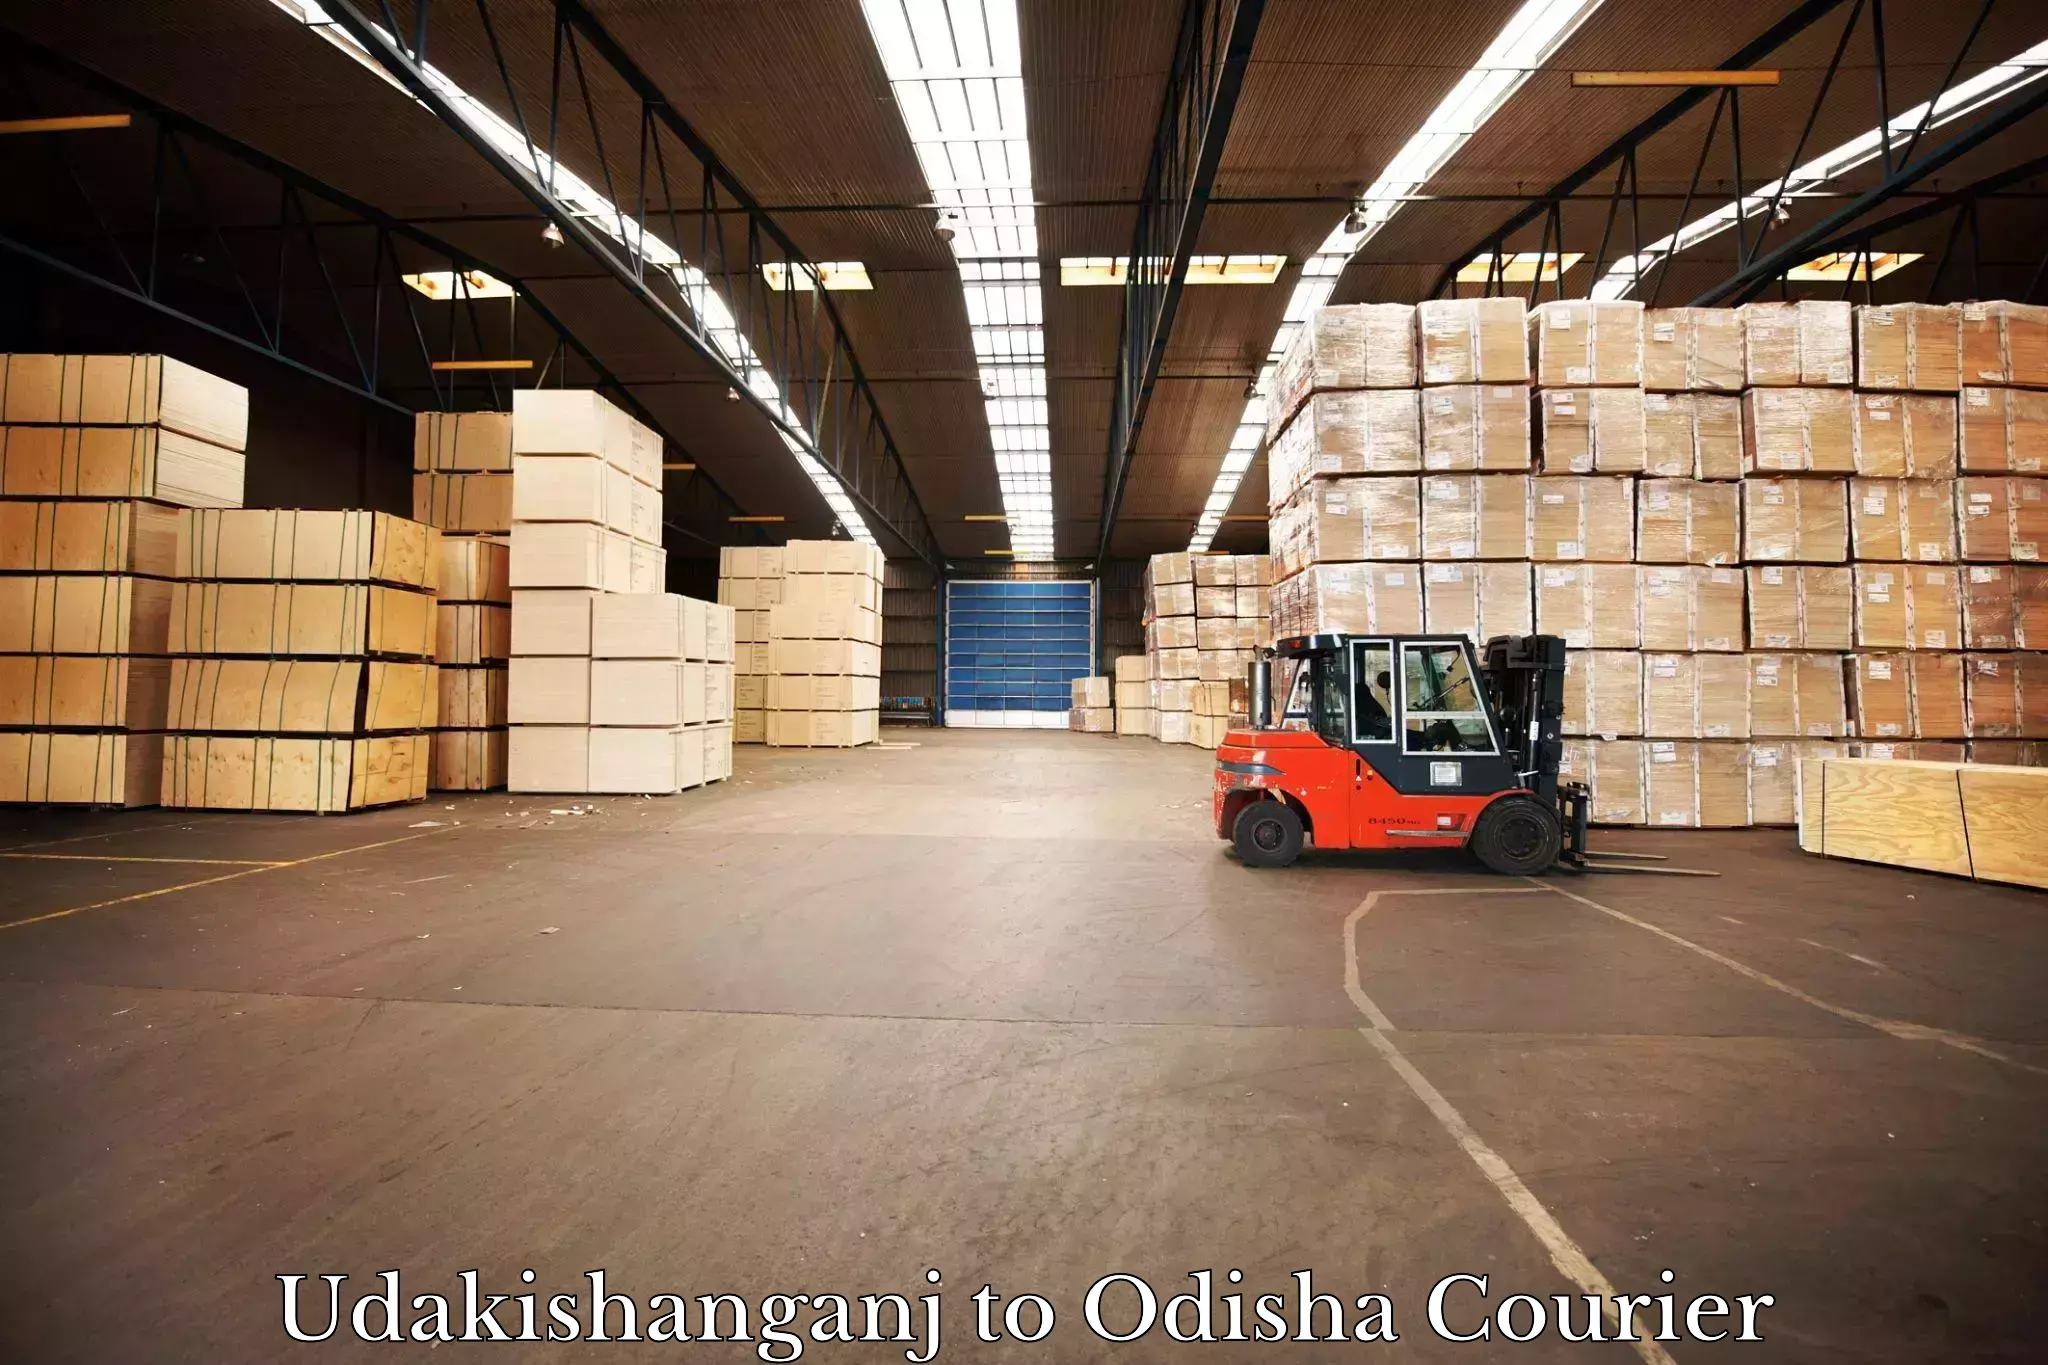 Global freight services Udakishanganj to Odisha